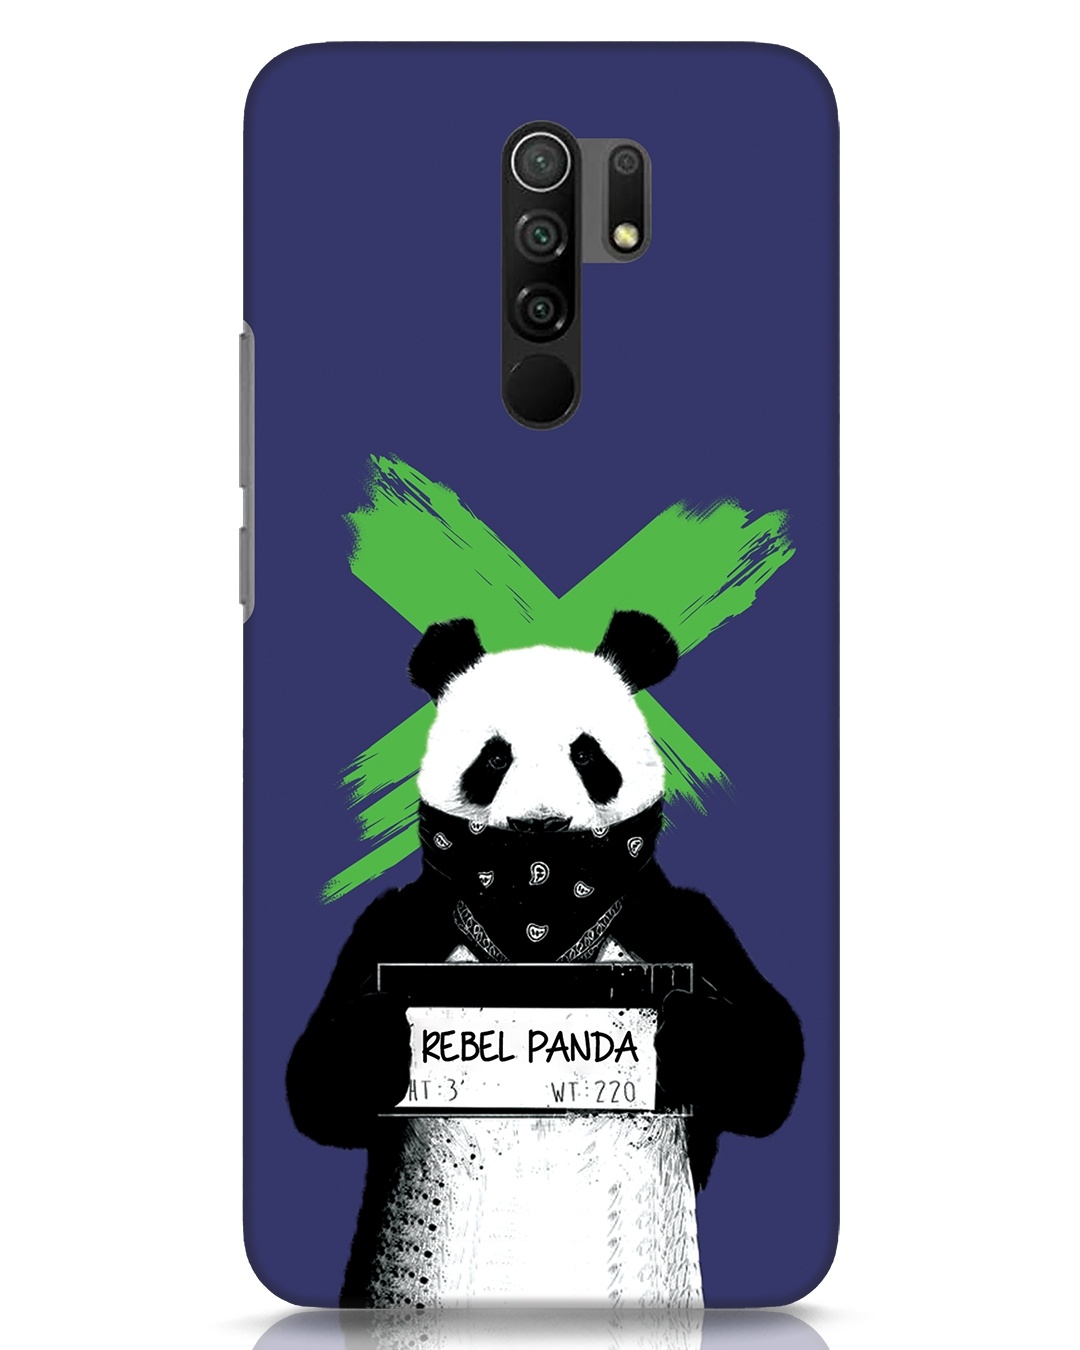 Buy Rebel Panda Designer Hard Cover For Xiaomi Redmi 9 Prime Online In India At Bewakoof 4044